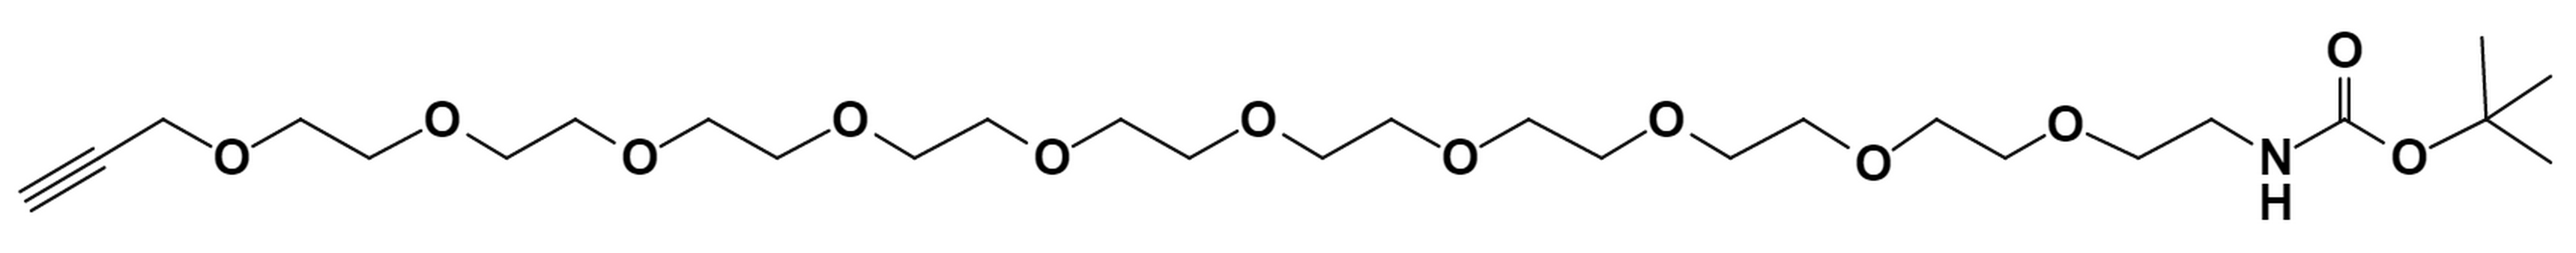 t-Boc-N-Amido-PEG10-propargyl